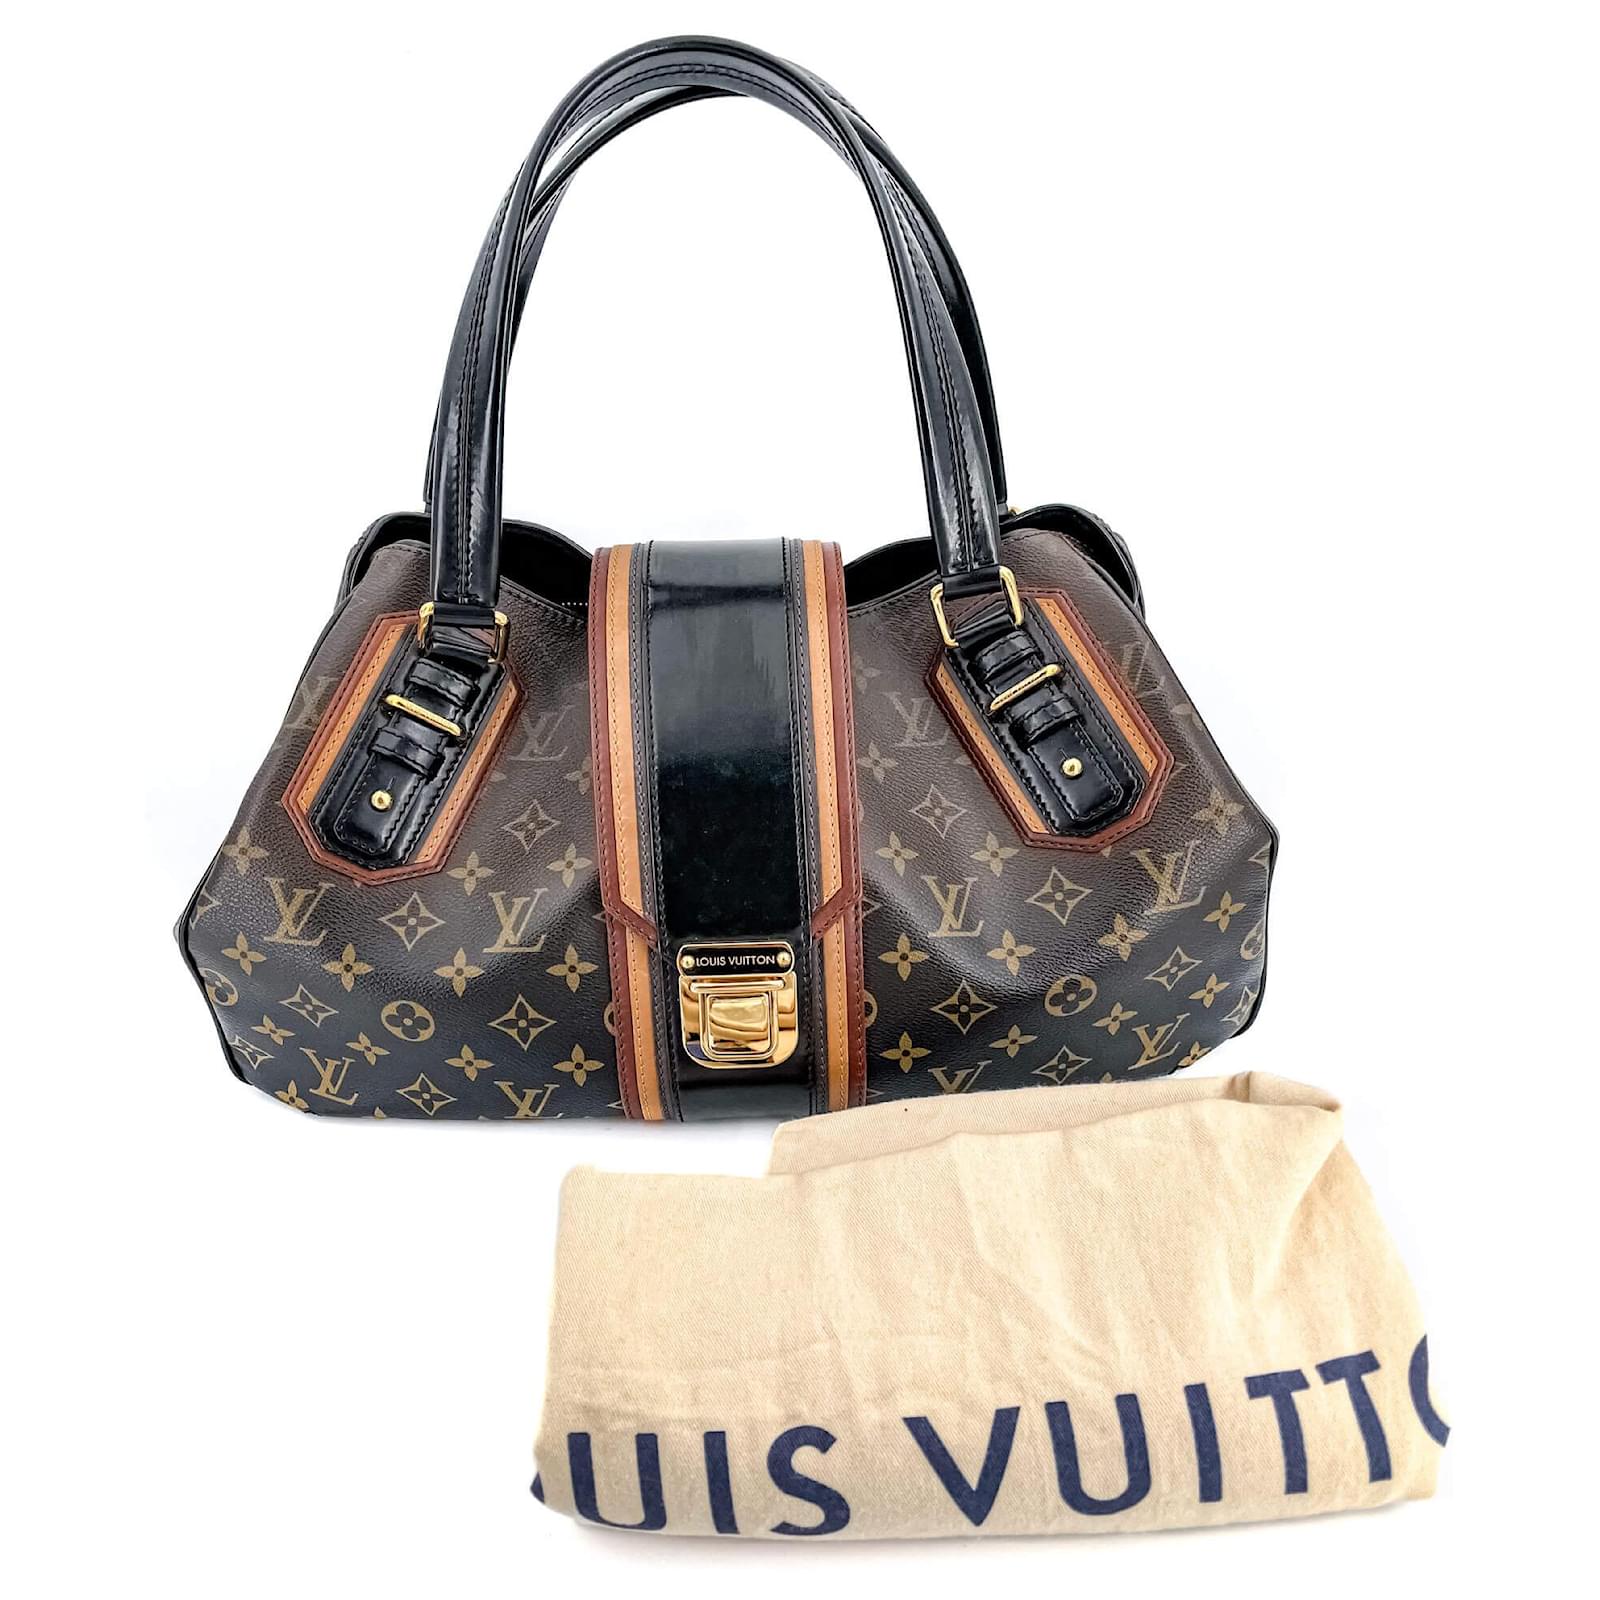 SOLD Louis Vuitton Limited Speedy Mirage Noir